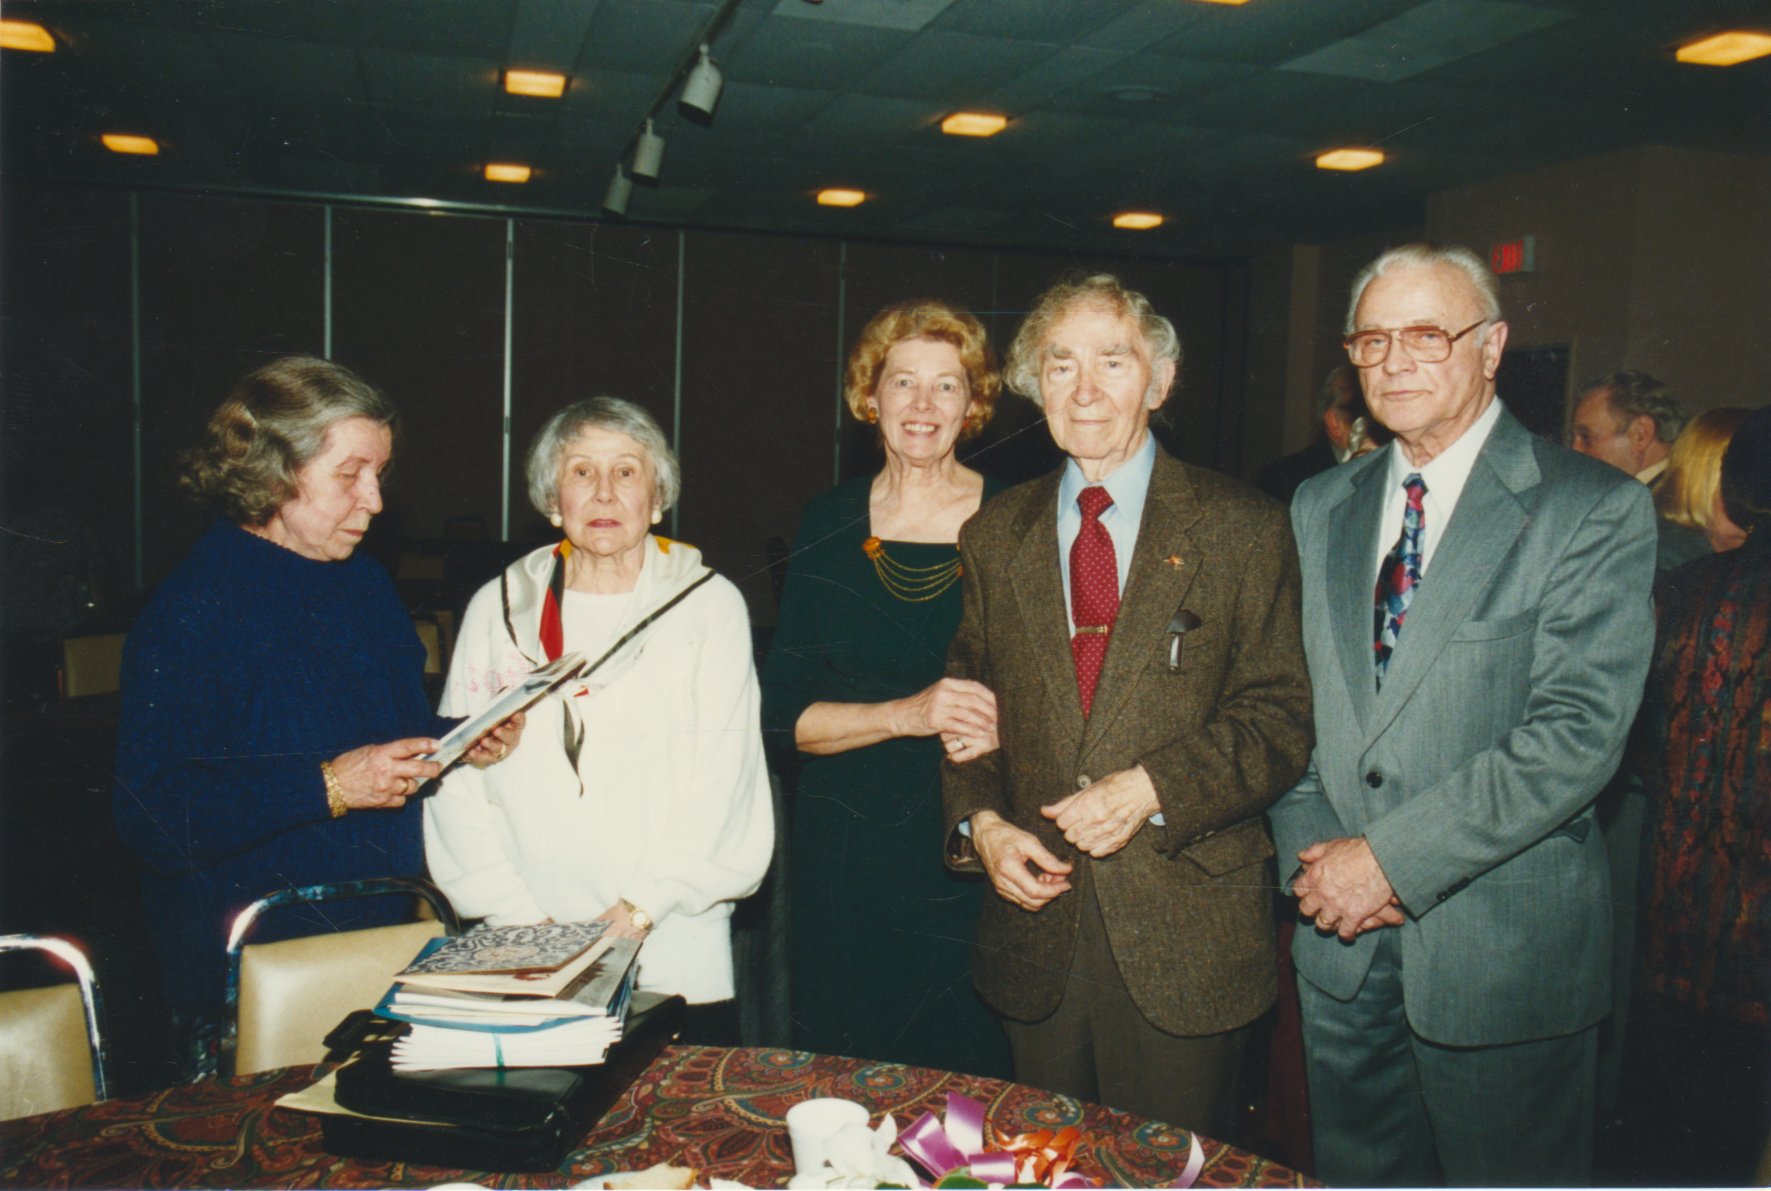 Iš dešinės: S. Džiugas, B. Brazdžionis, D. Bindokienė, J. Švabaitė-Gylienė, Liūnė Sutema. Apie 2000 m. Fotografas Vytautas Jasinevičius